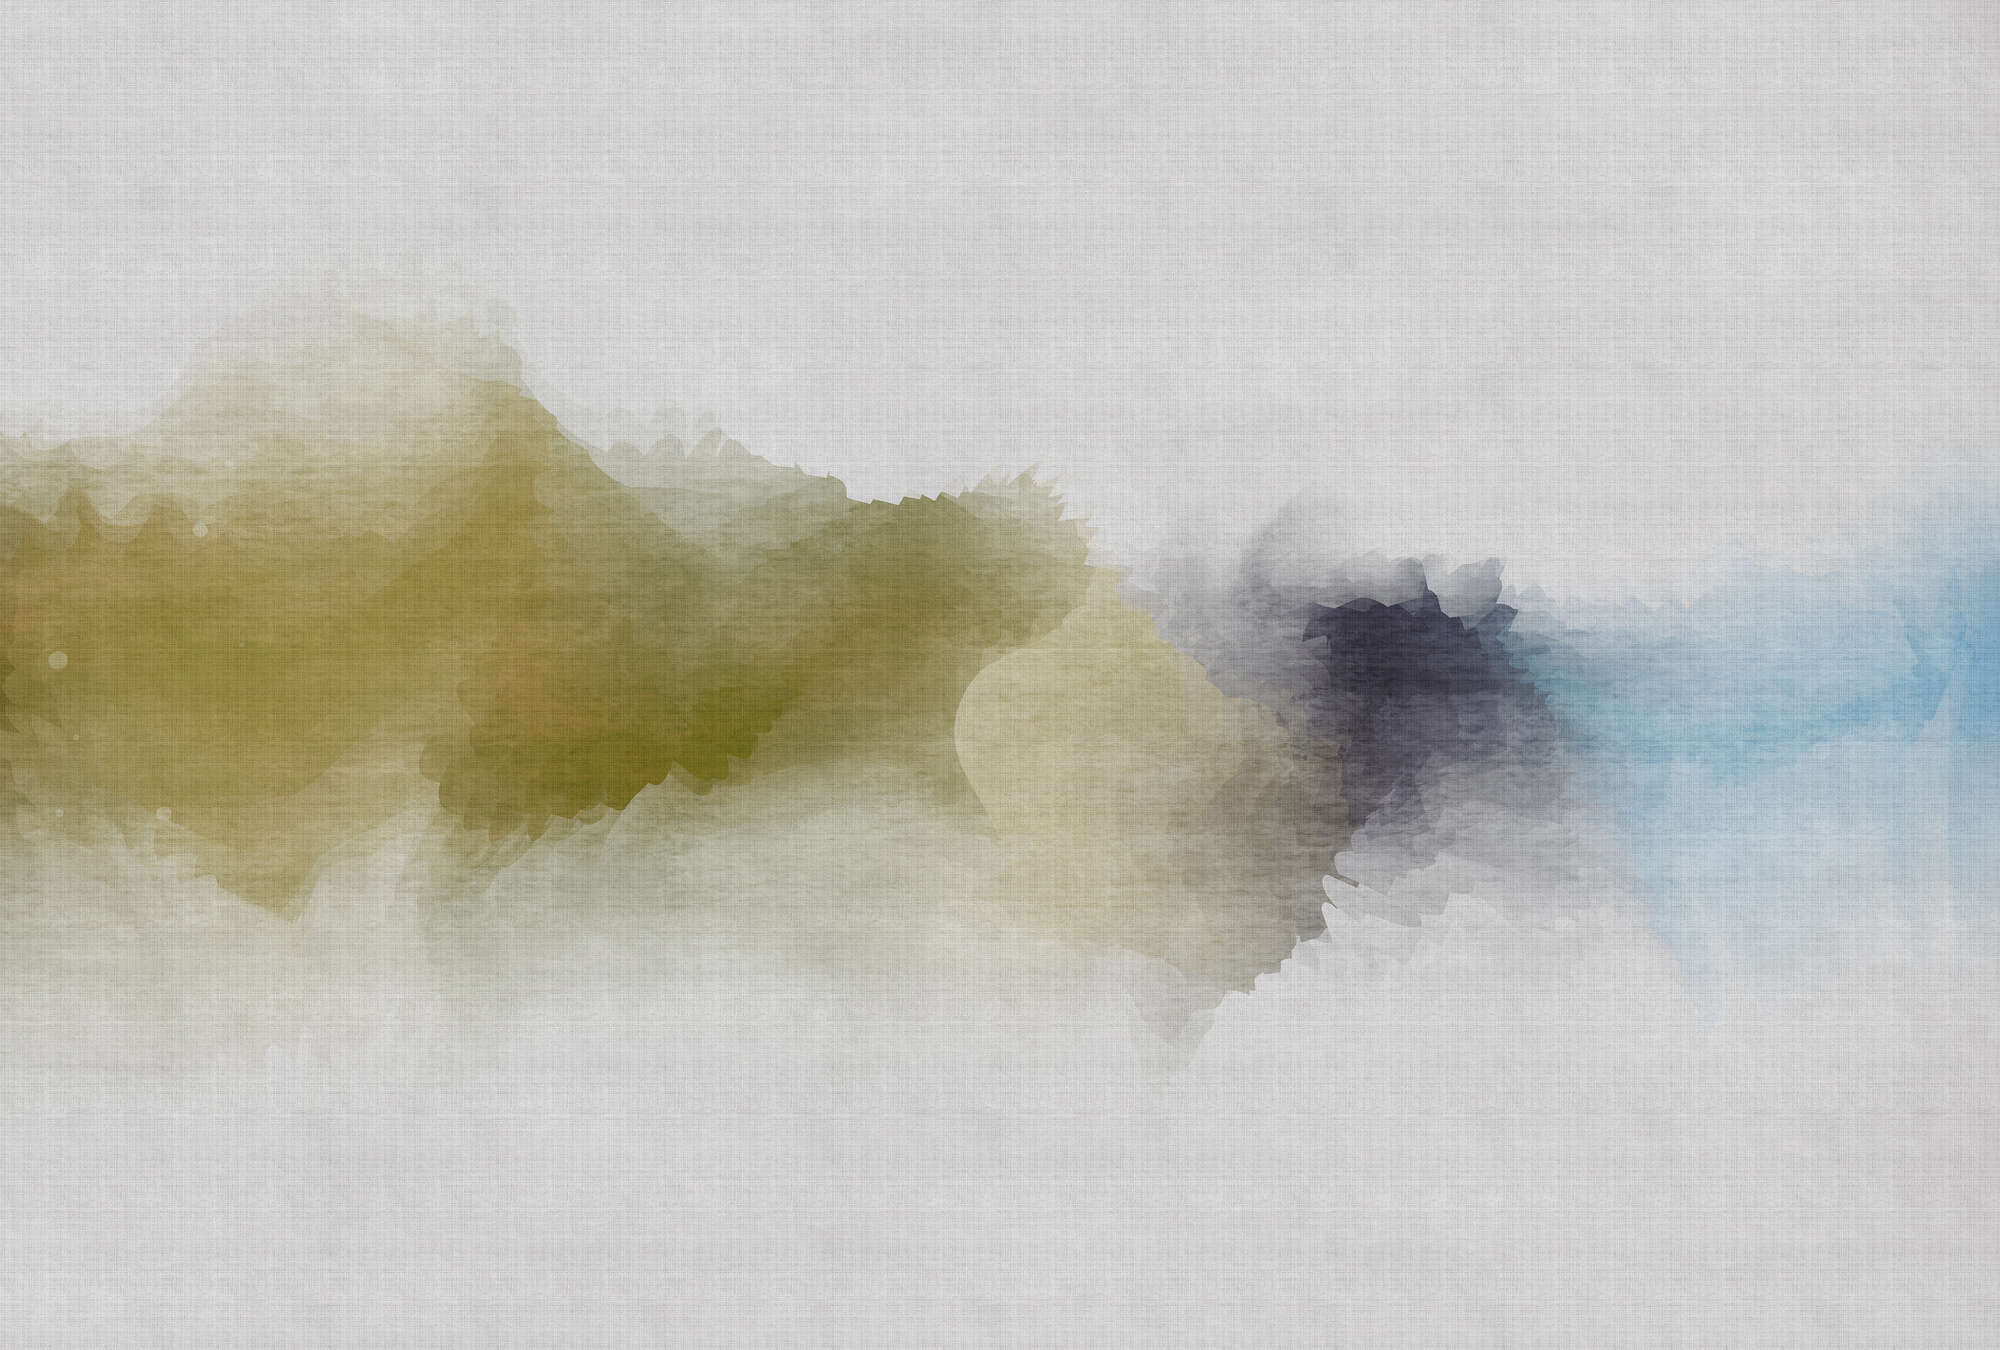             Daydream 3 - Digital behang bewolkt aquarelpatroon - natuurlijke linnenstructuur - Blauw, Geel | Parelglad vlies
        